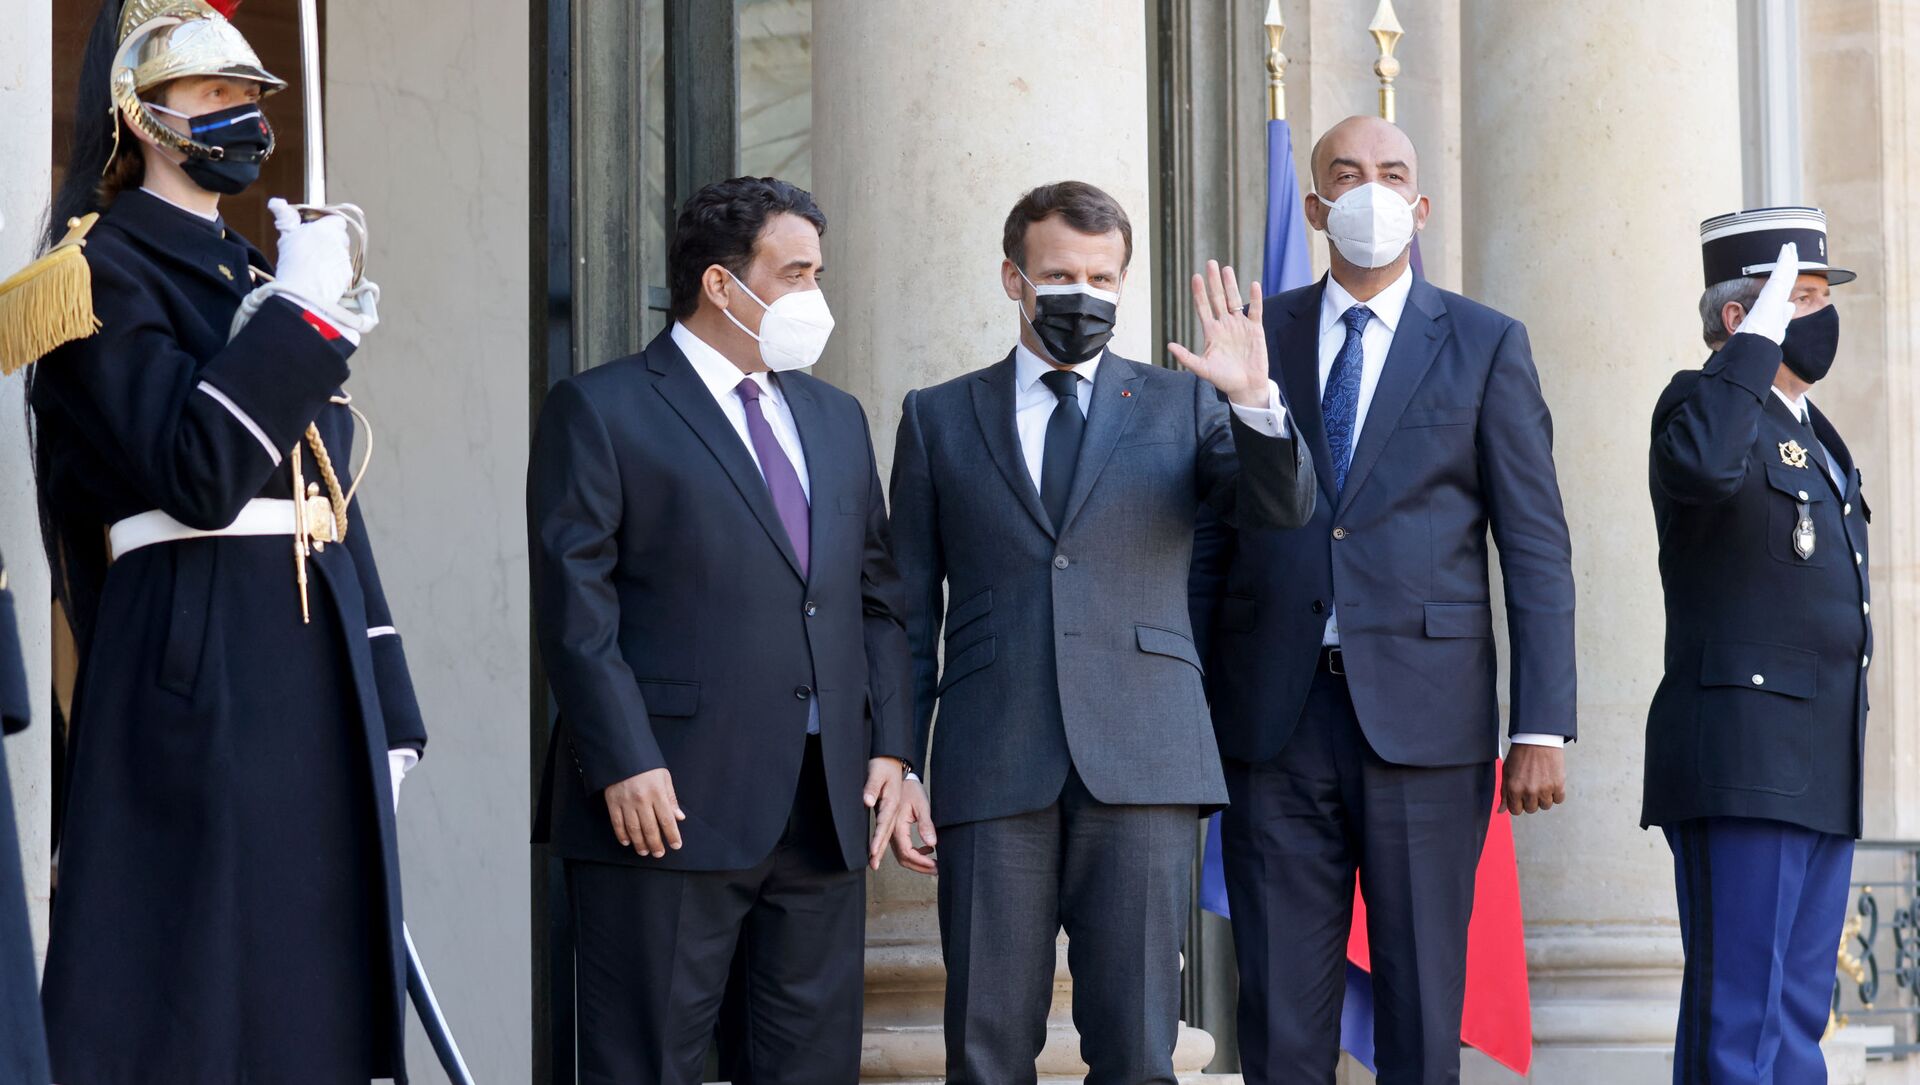 Le président français Emmanuel Macron pose avec les dirigeants intérimaires de la Libye Mohamed El-Menfi et Musa al-Koni - Sputnik Afrique, 1920, 01.04.2021